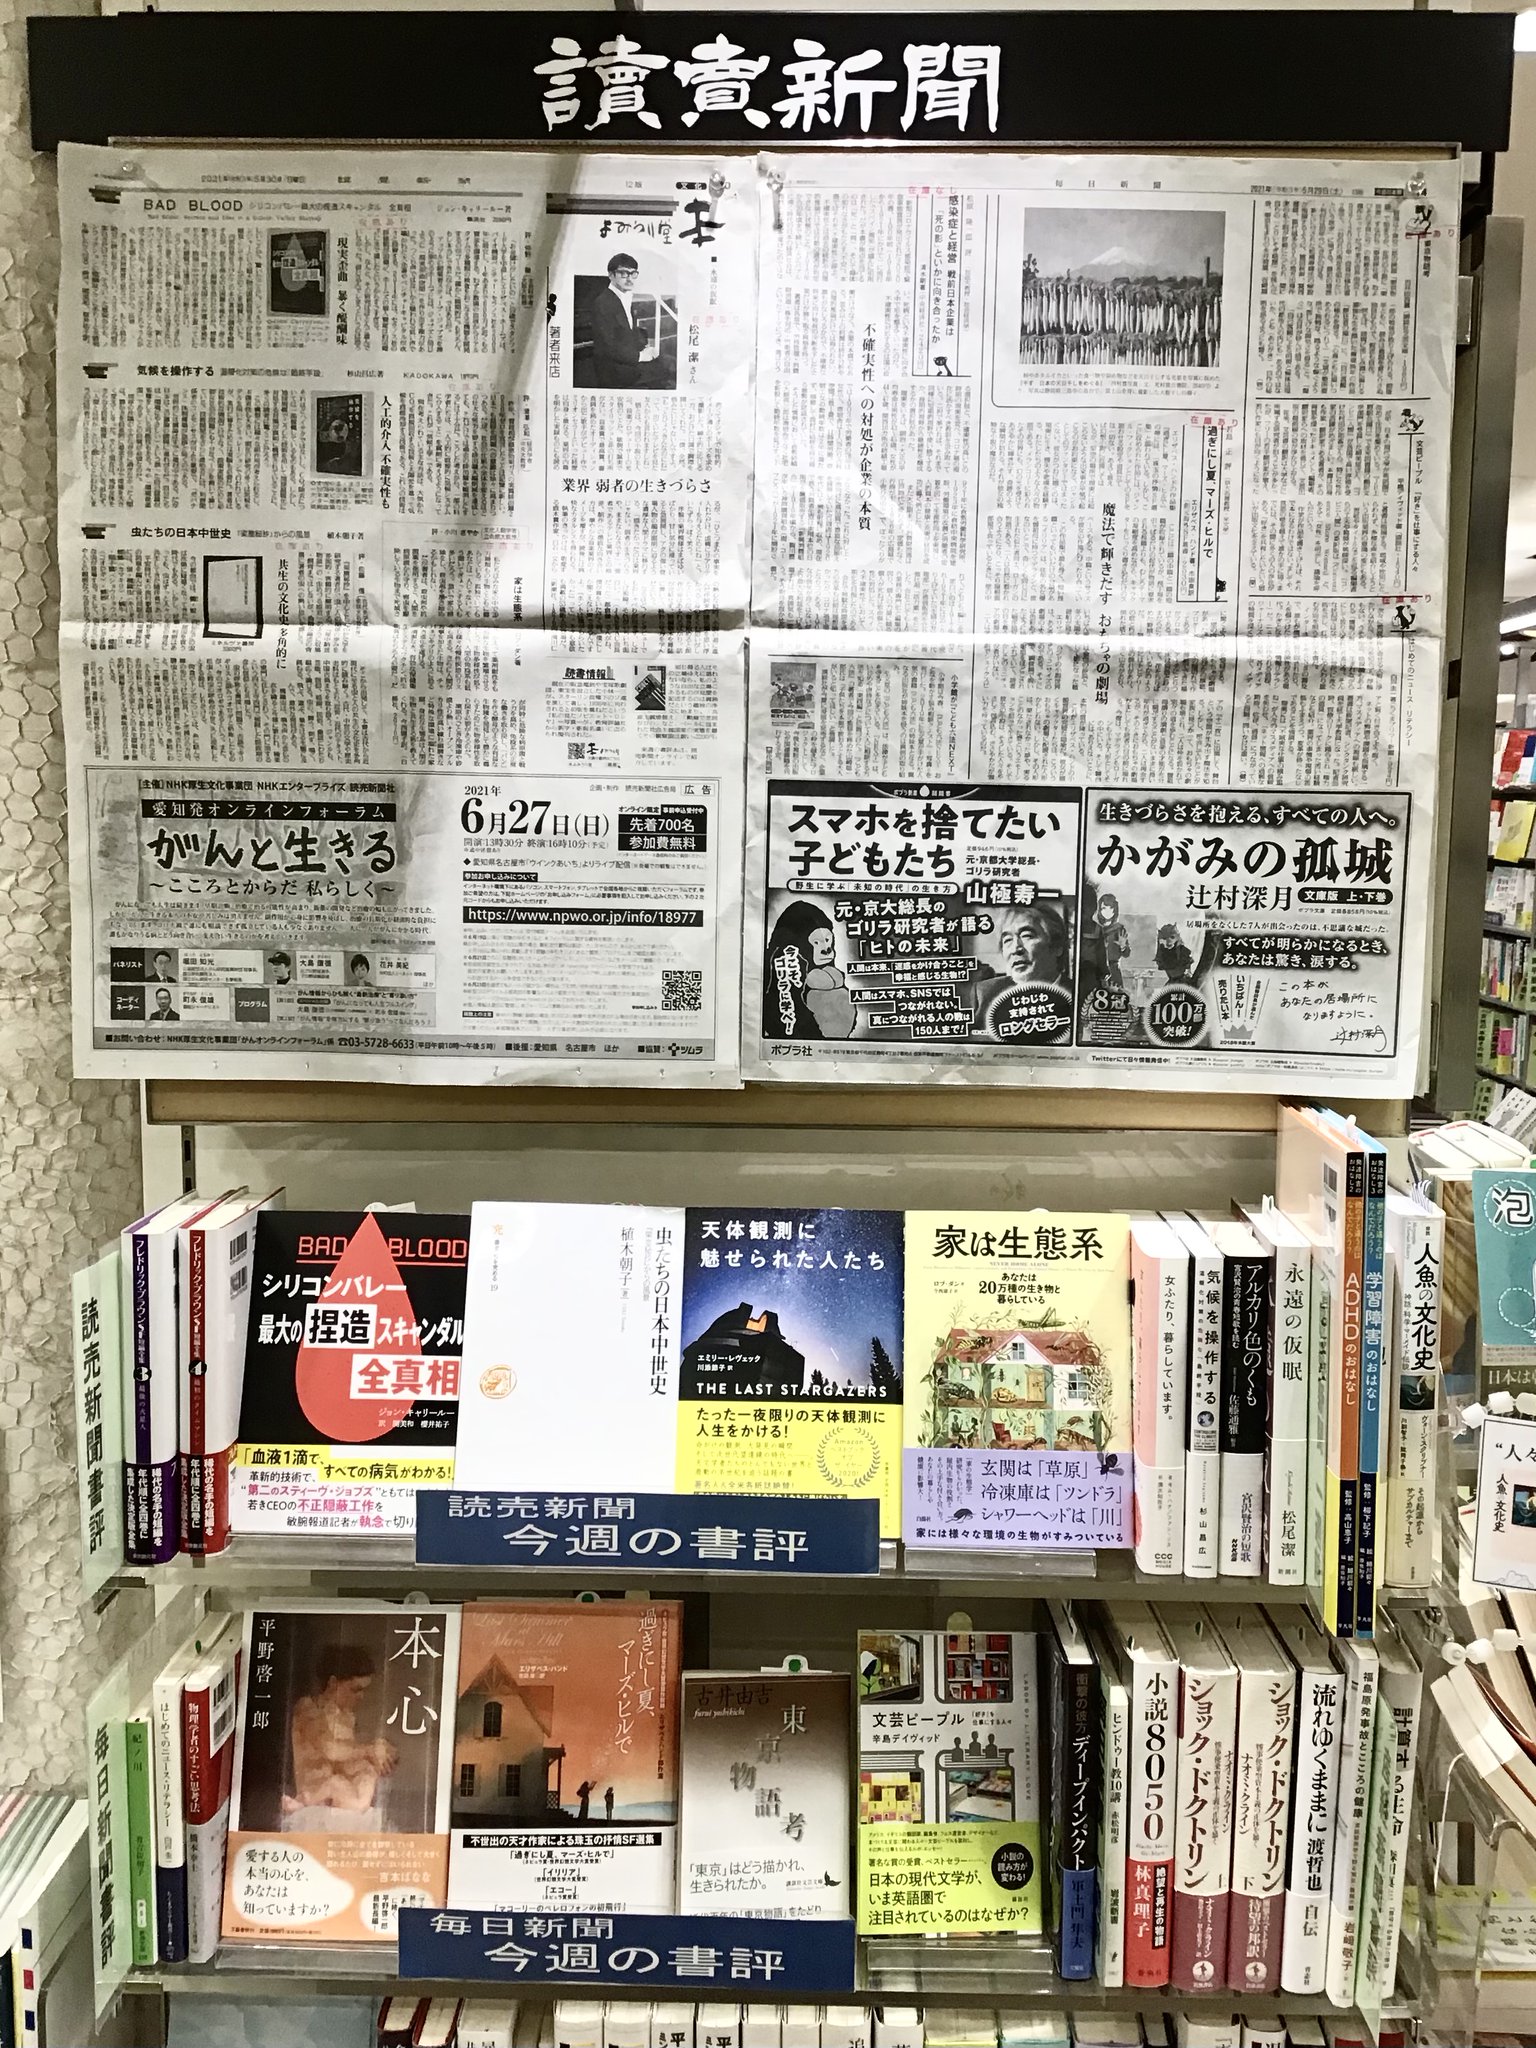 くまざわ書店 松戸店 on Twitter: "今週の読売新聞書評コーナーです。 『BAD BLOOD』(集英社) 『虫たちの日本中世史